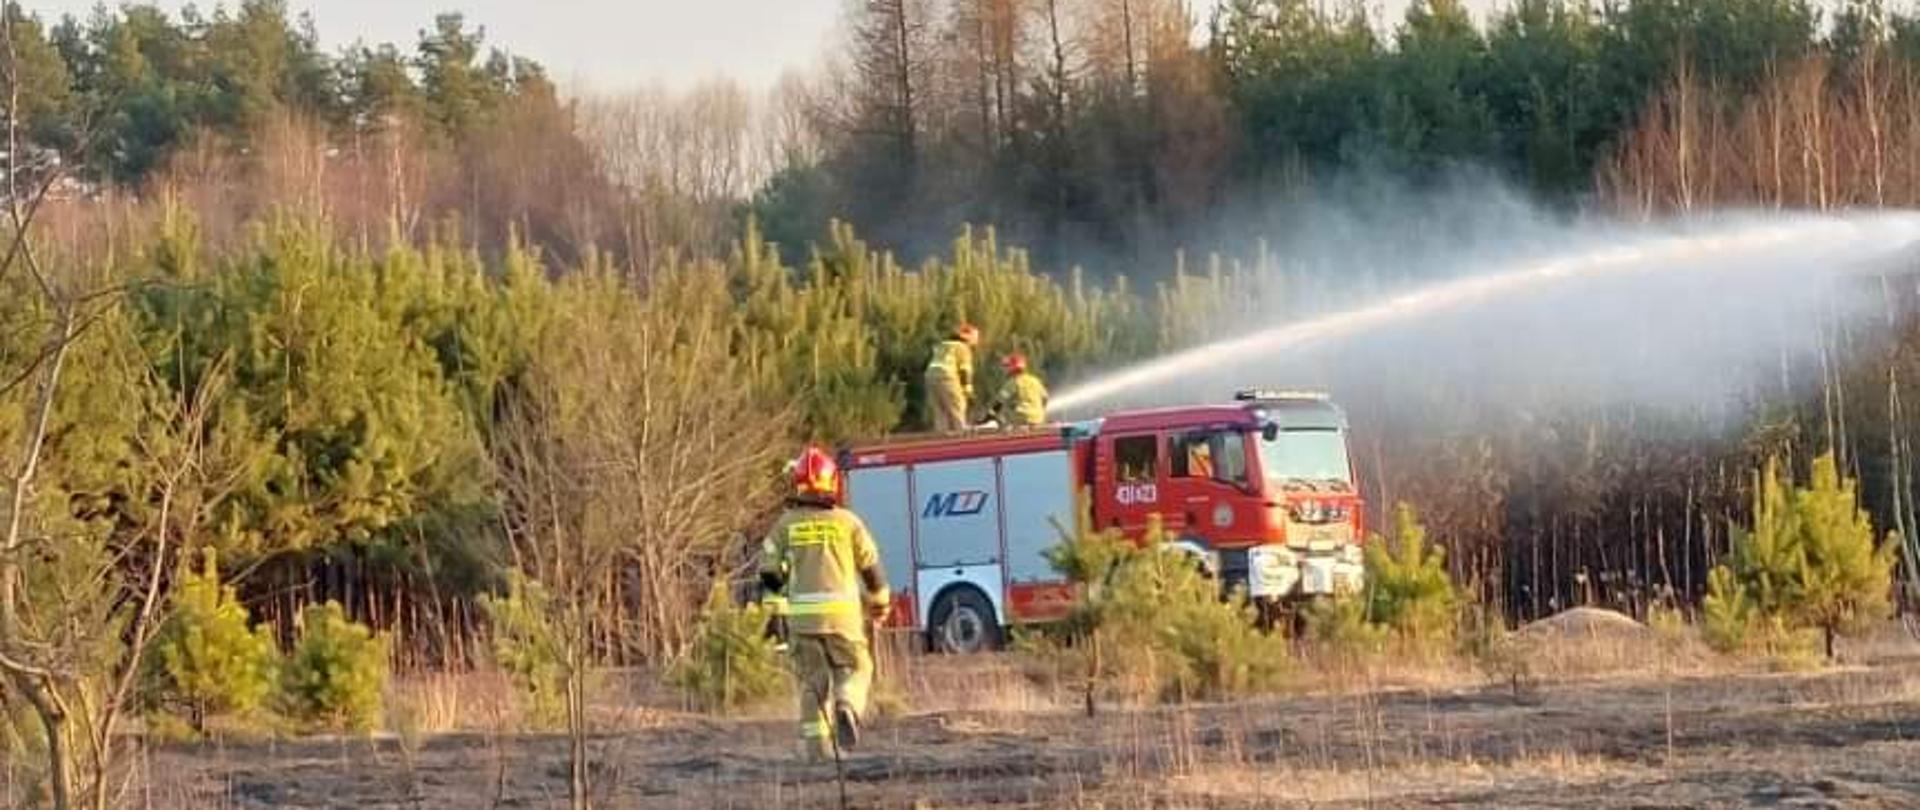 Na zdjęciu widać strażaków gaszących pożar suchej trawy przy użyciu działka wodno-pianowego średniego samochodu ratowniczo-gaśniczego. W tle widoczny jest las.